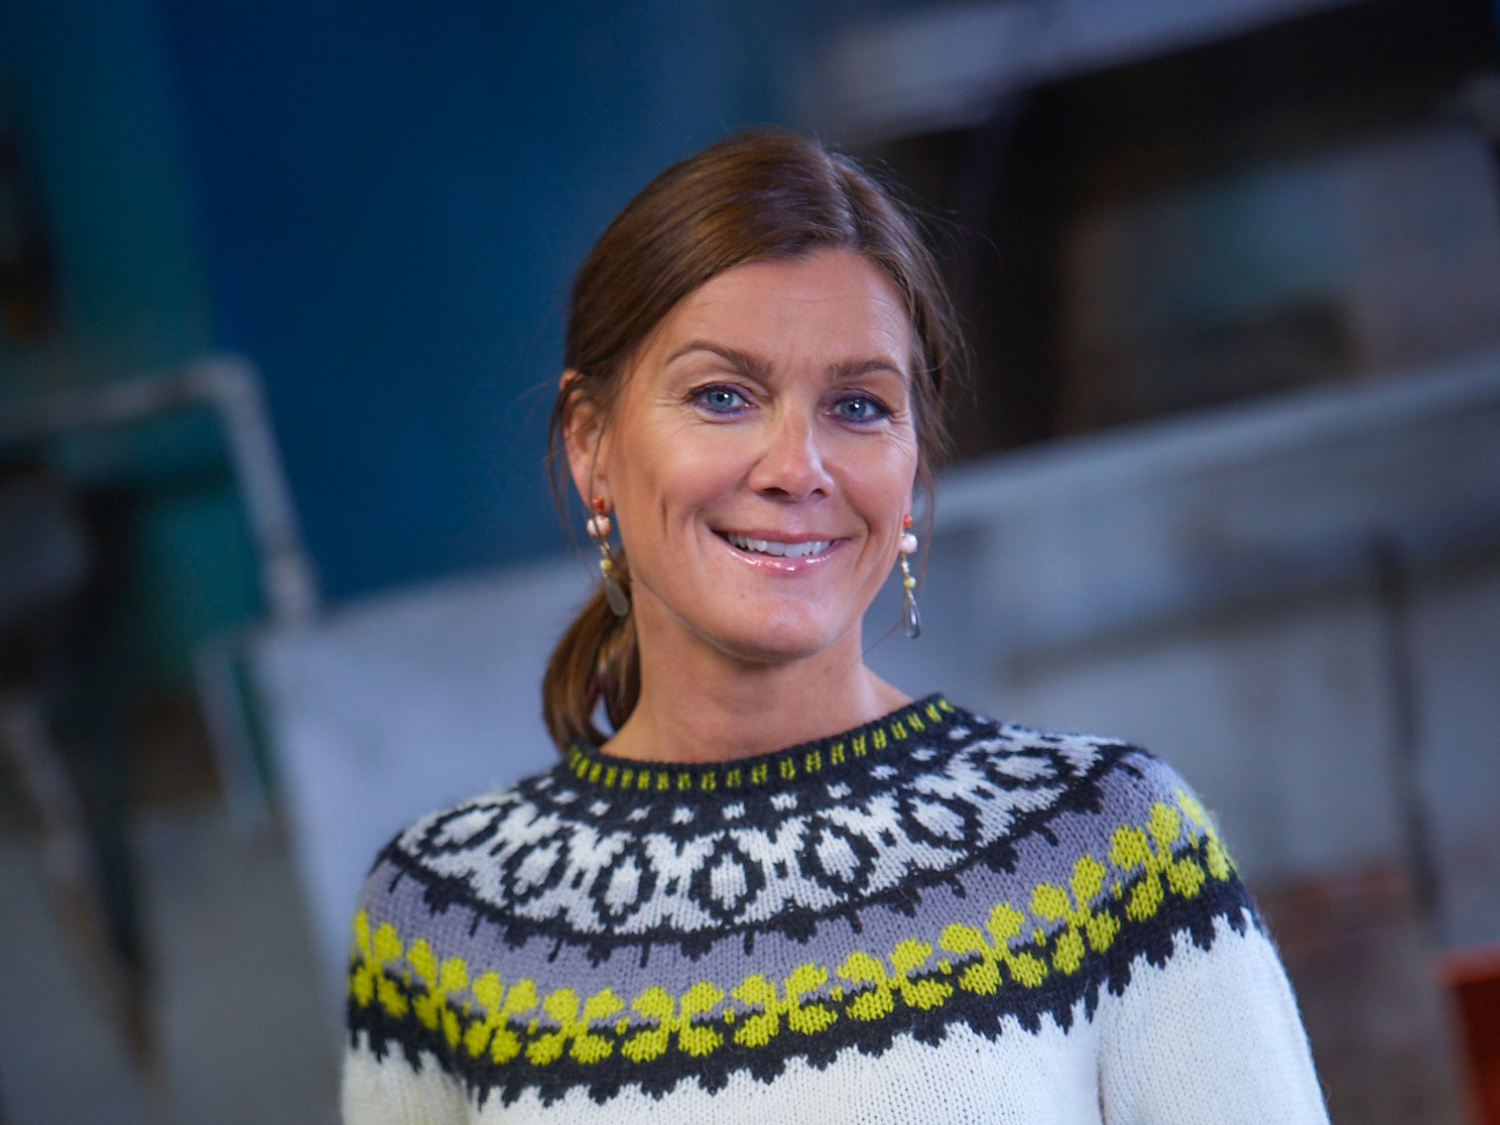 Kari Roll-Matthiesen tiltrer som ny direktør ved Kistefos Museum senest 1. januar 2023. 